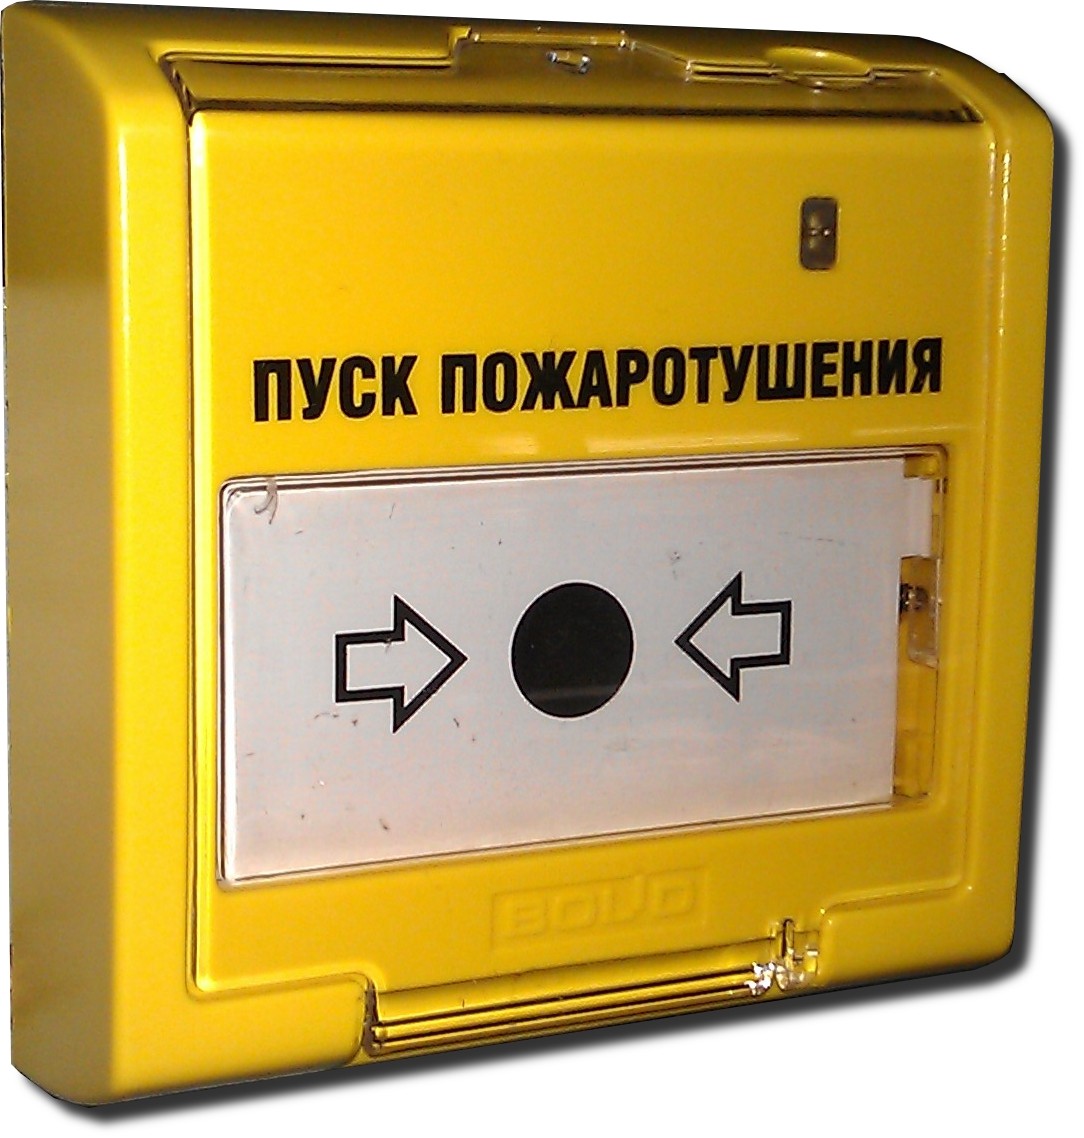 ЭДУ-513-3М (желтый) элемент дистационного управления для запуска системы пож.тушения